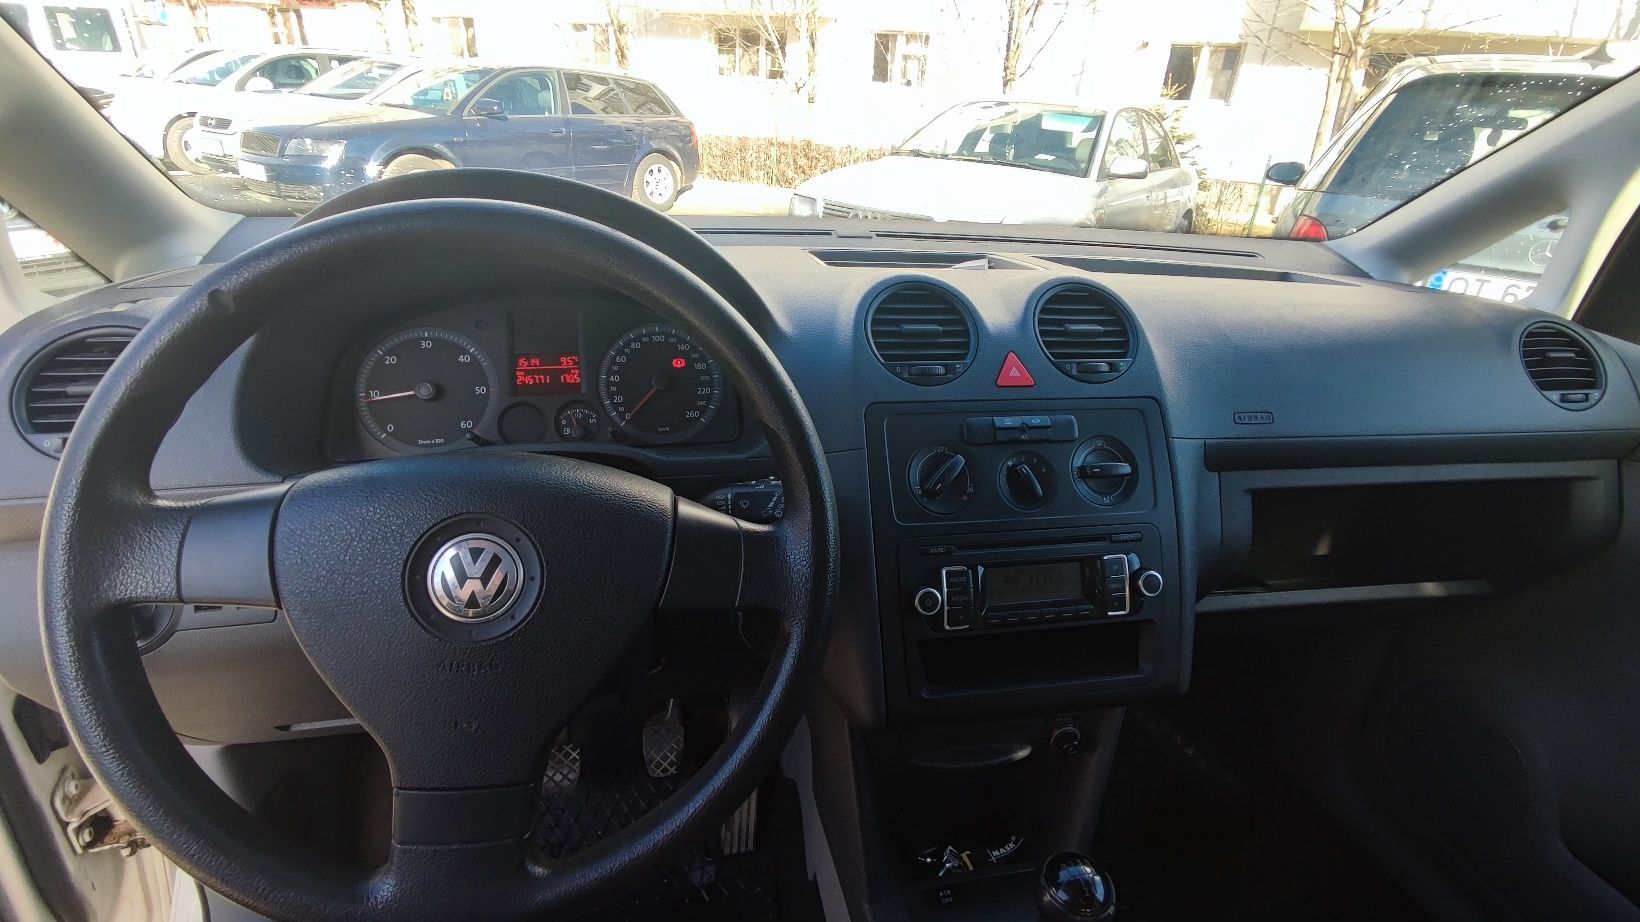 VW caddy 1.9 TDi 2008